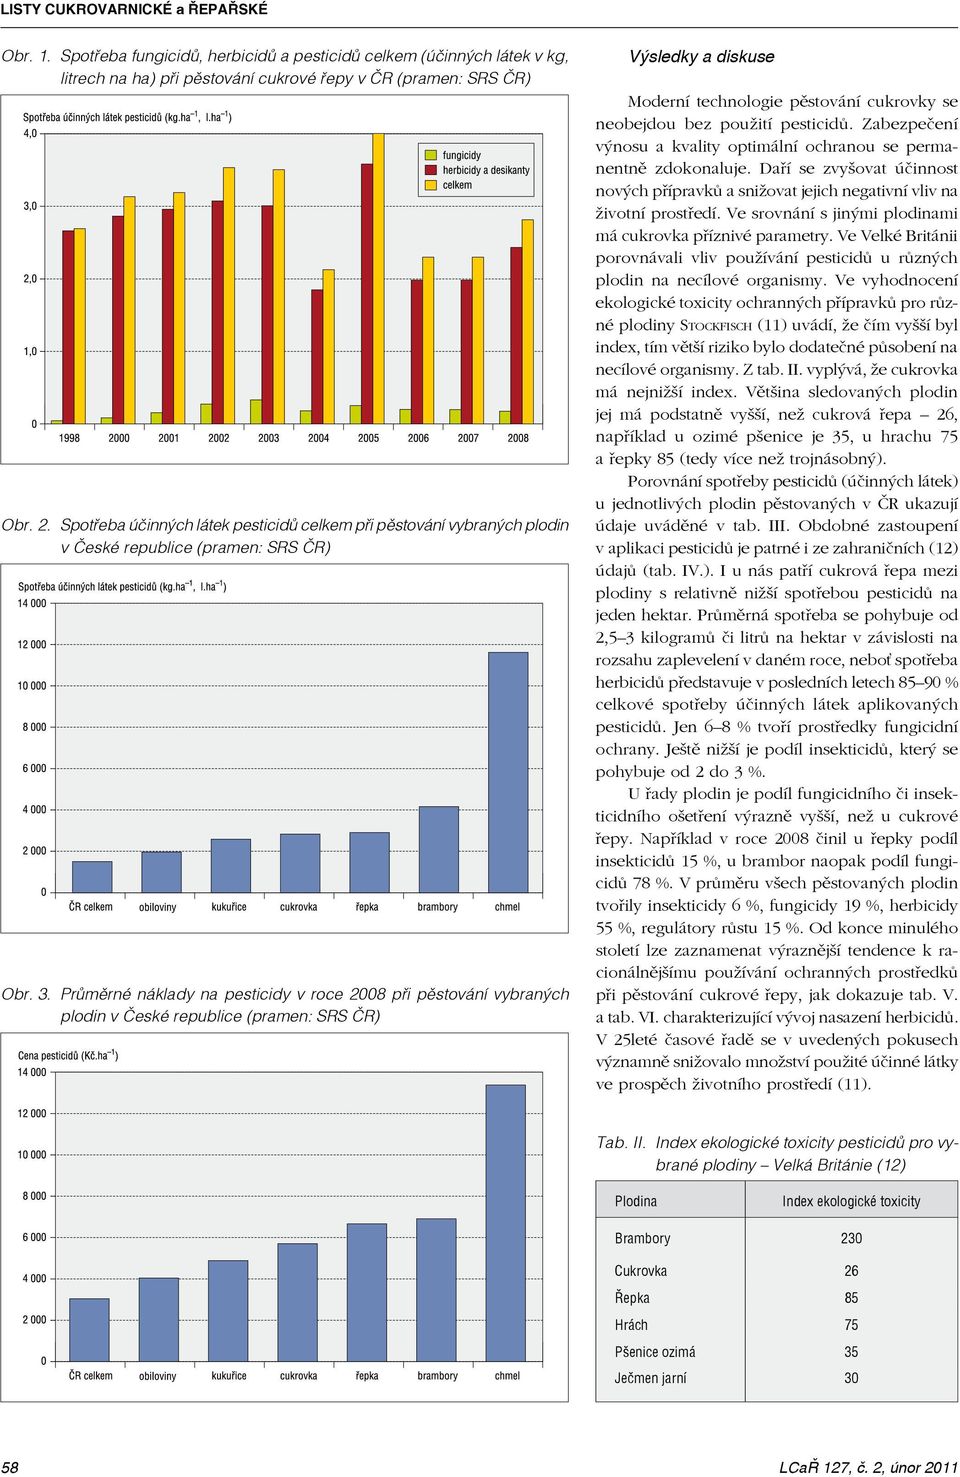 Průměrné náklady na pesticidy v roce 2008 při pěstování vybraných plodin v České republice (pramen: SRS ČR) Výsledky a diskuse Moderní technologie pěstování cukrovky se neobejdou bez použití